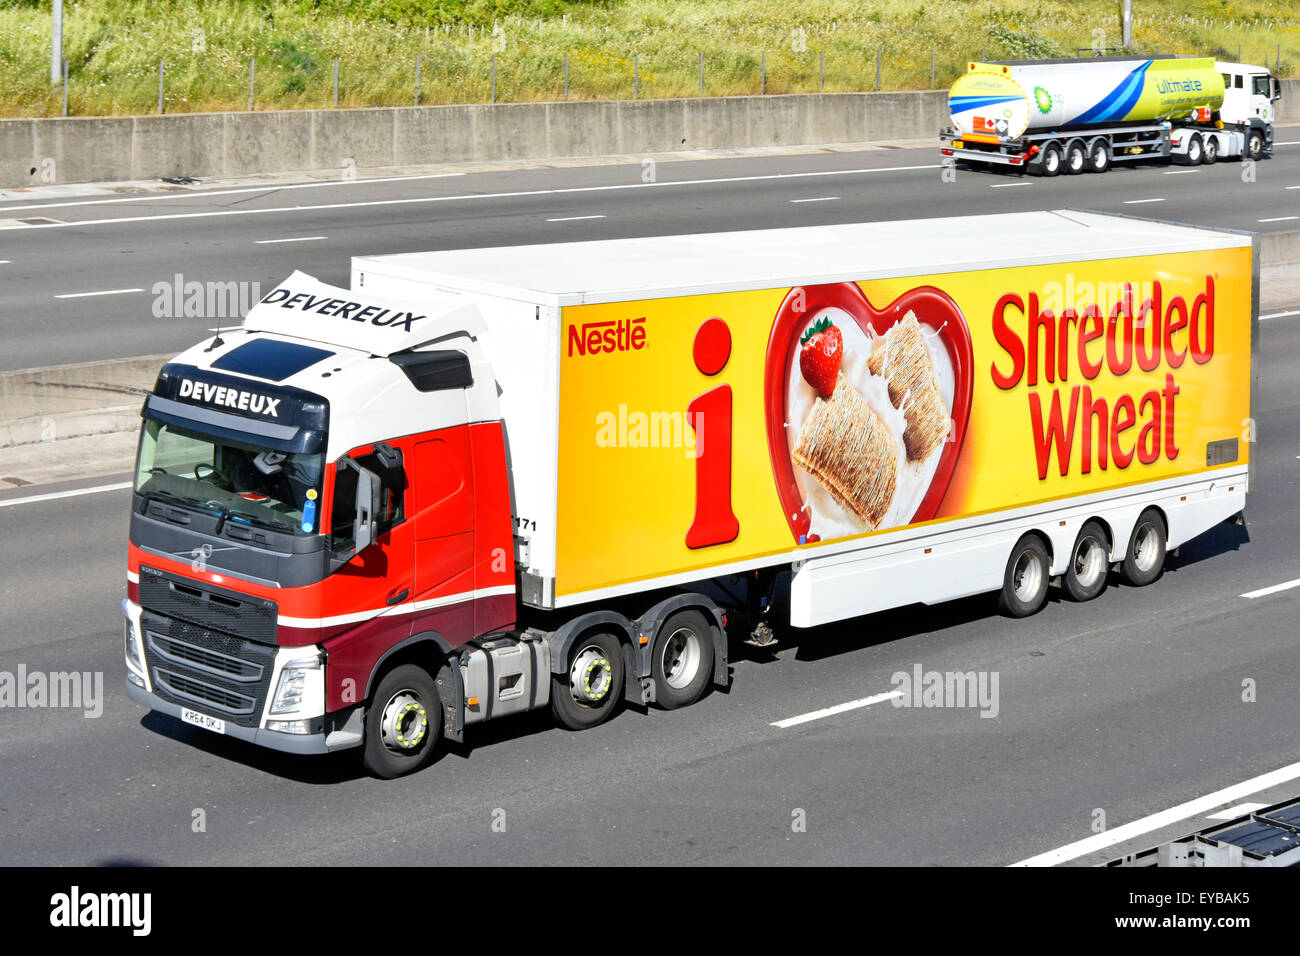 Nestlé Shredded frumento annuncio su rimorchio articolato catena alimentare distribuzione logistica hgv autocarro autocarro percorrendo l autostrada del Regno Unito Foto Stock